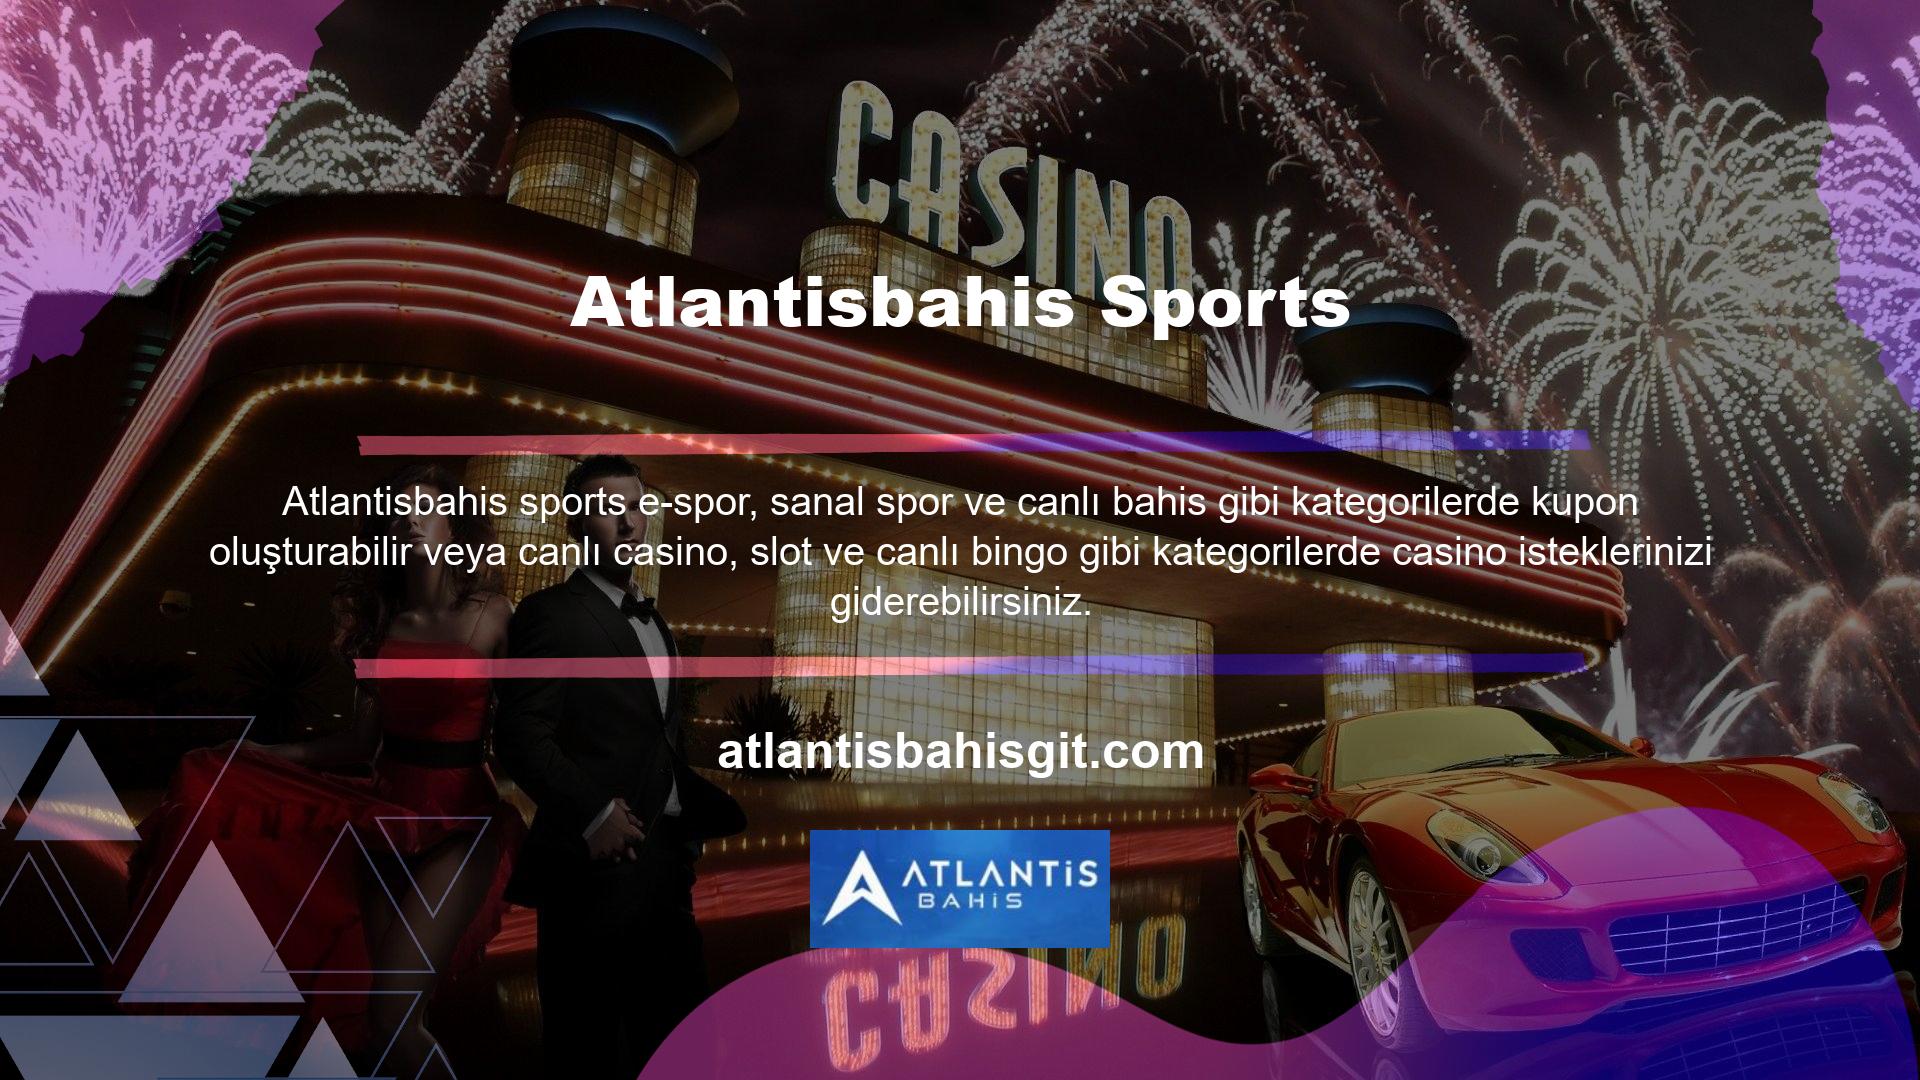 Atlantisbahis aynı zamanda resmi firmanın alt markası olup üyelerine 7/24 ödeme garantisi vermektedir